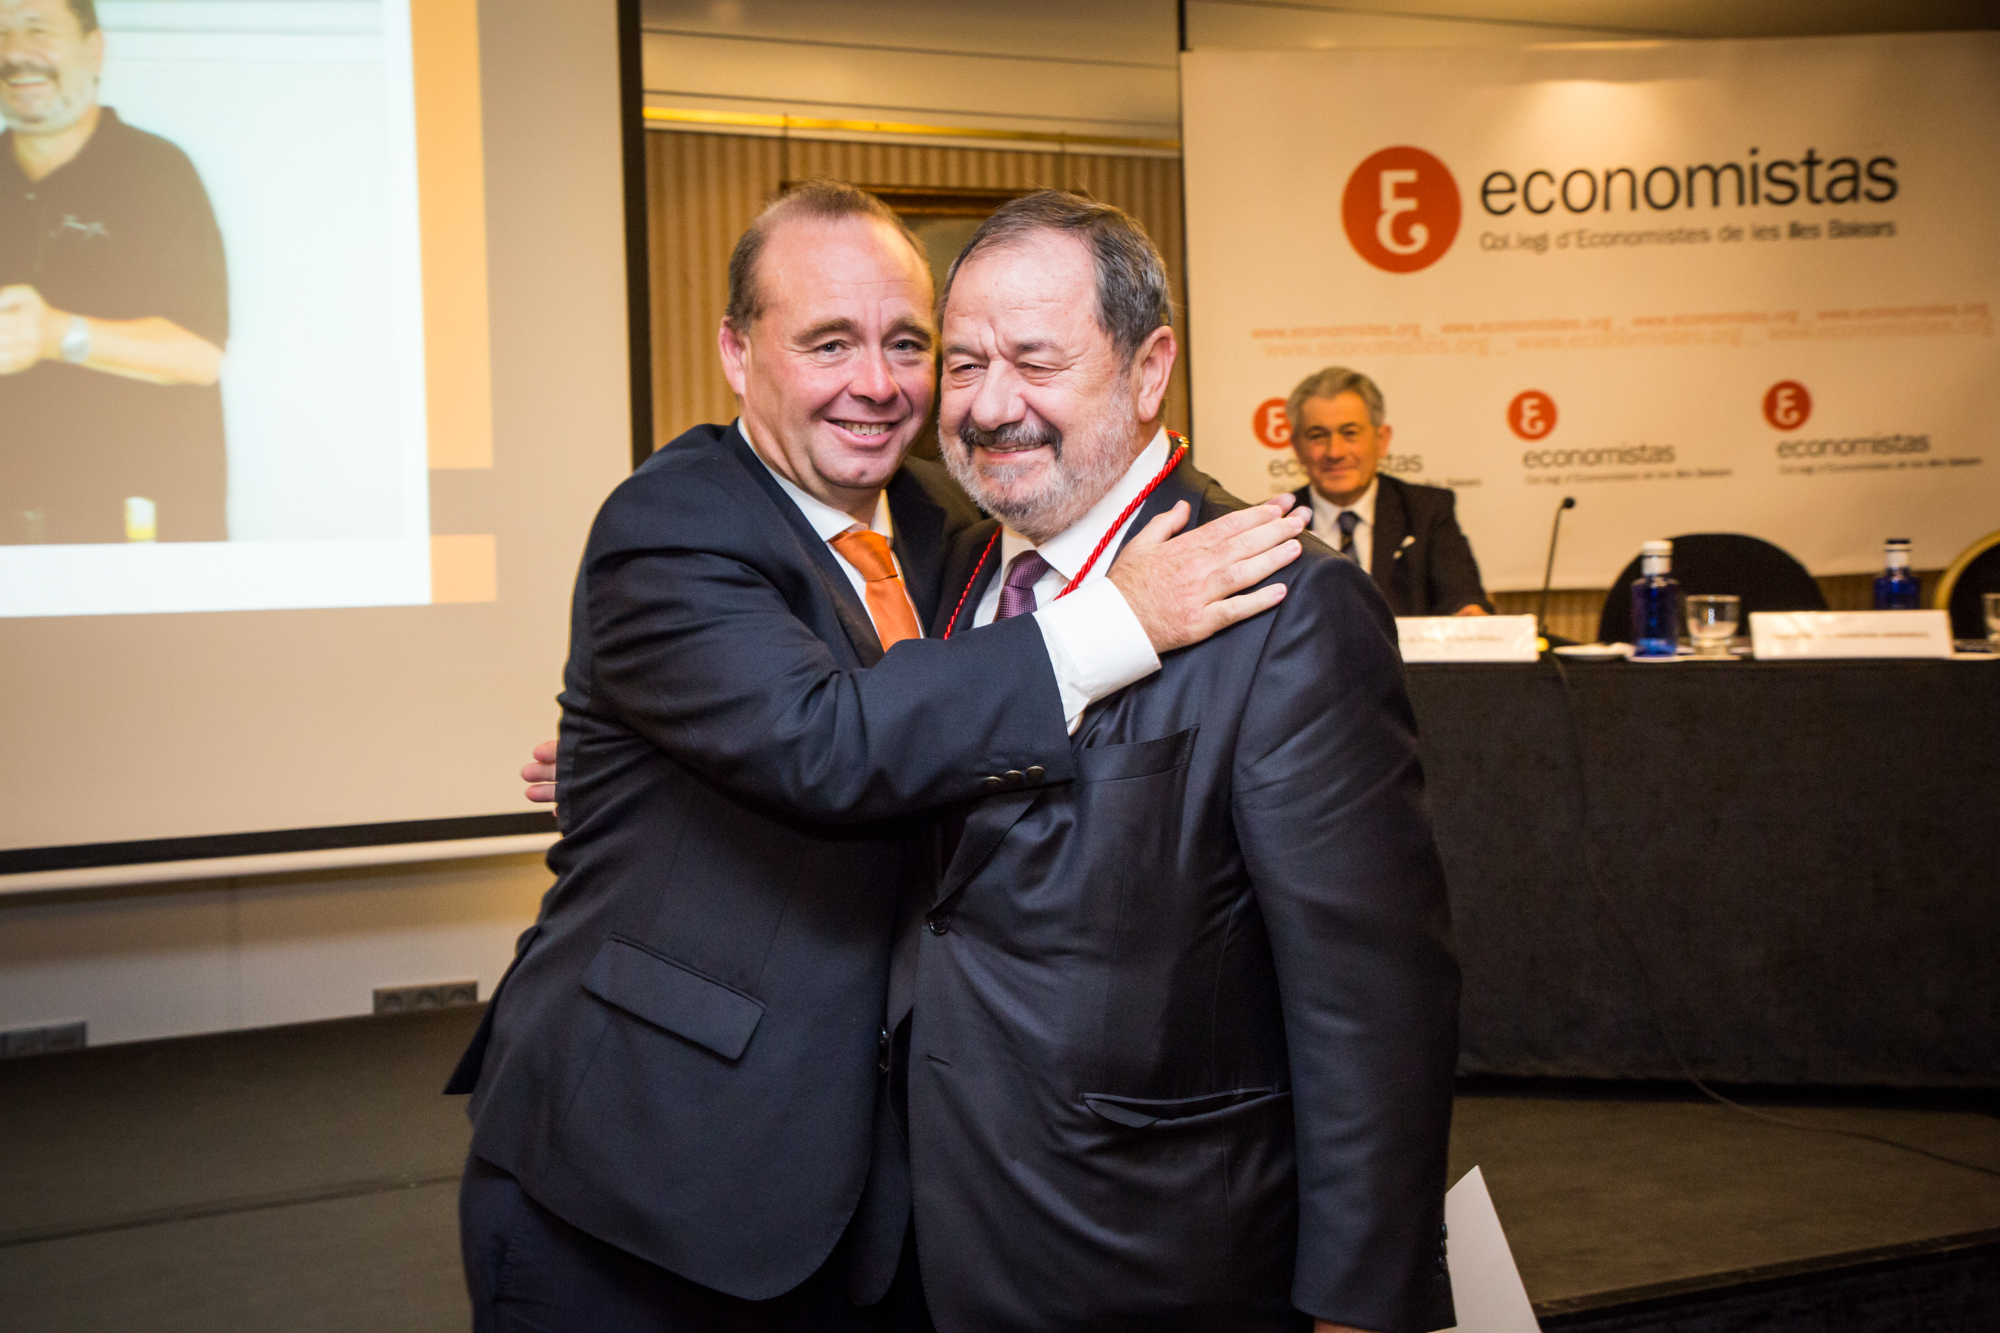 D. Vicente Rotger Rebassa, Medalla de Oro del Colegio de Economistas a la Trayectoria Empresarial 2017